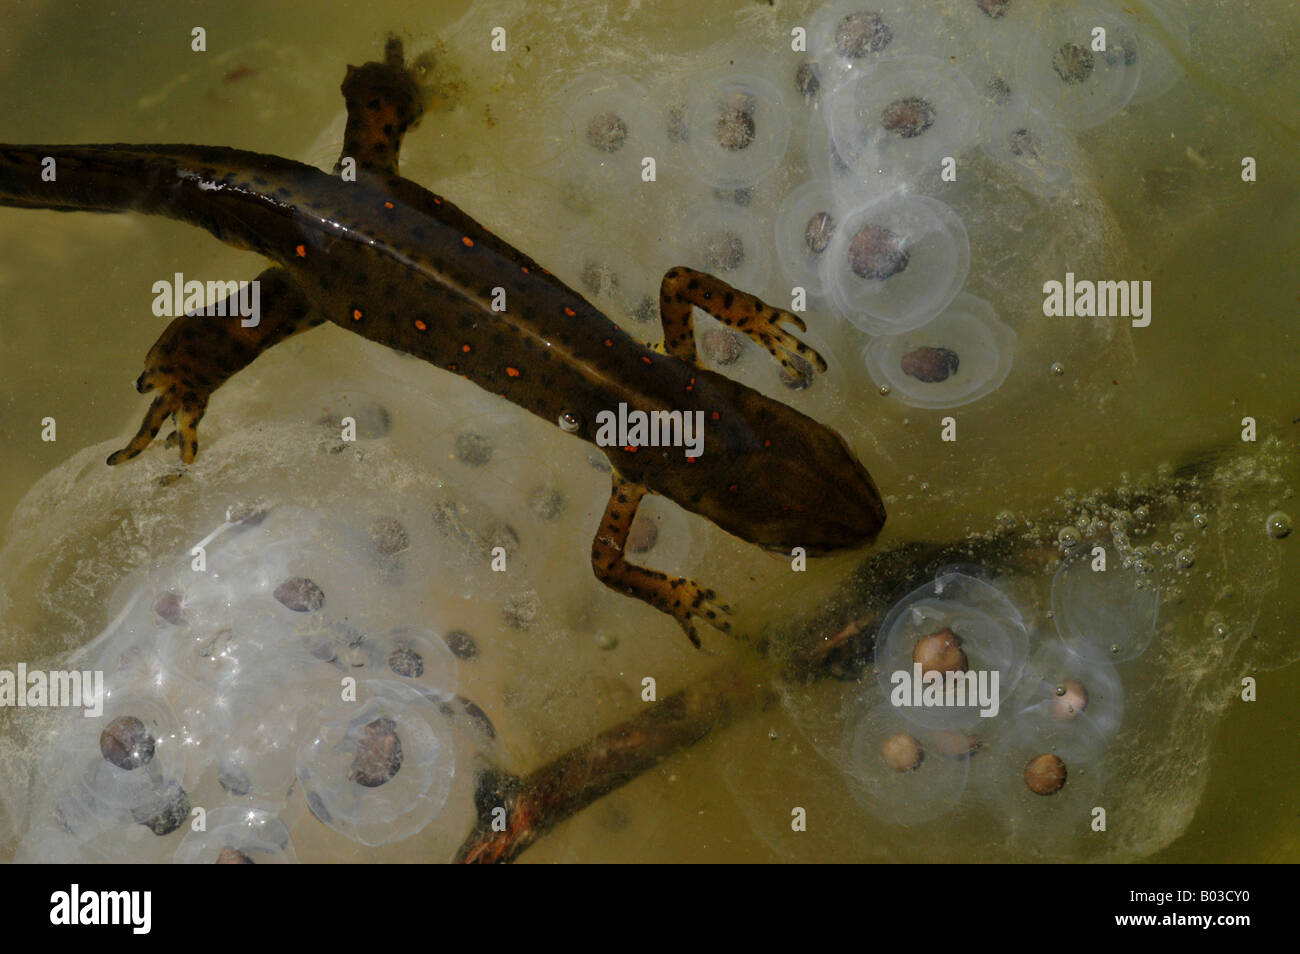 Salamander Laying Eggs